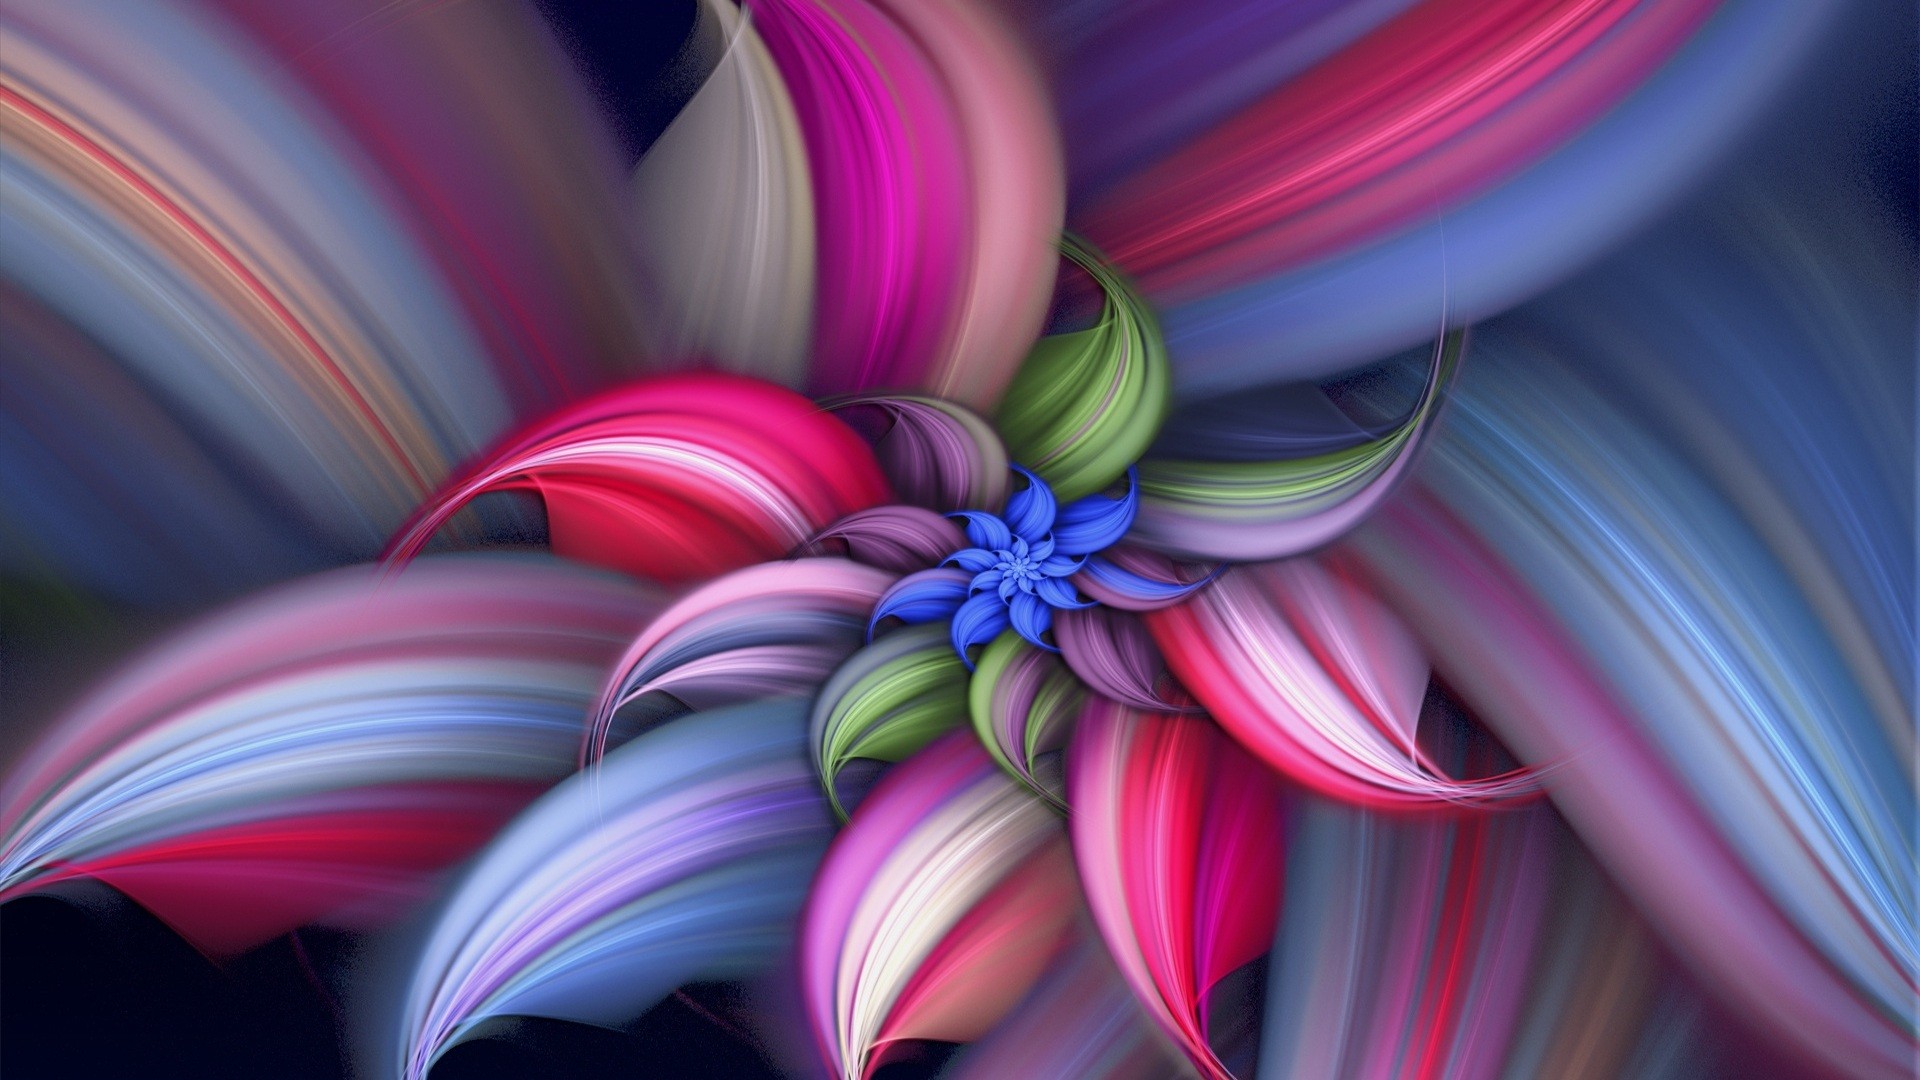 Widescreen Desktop Wallpaper Abstract Flower - WallpaperSafari